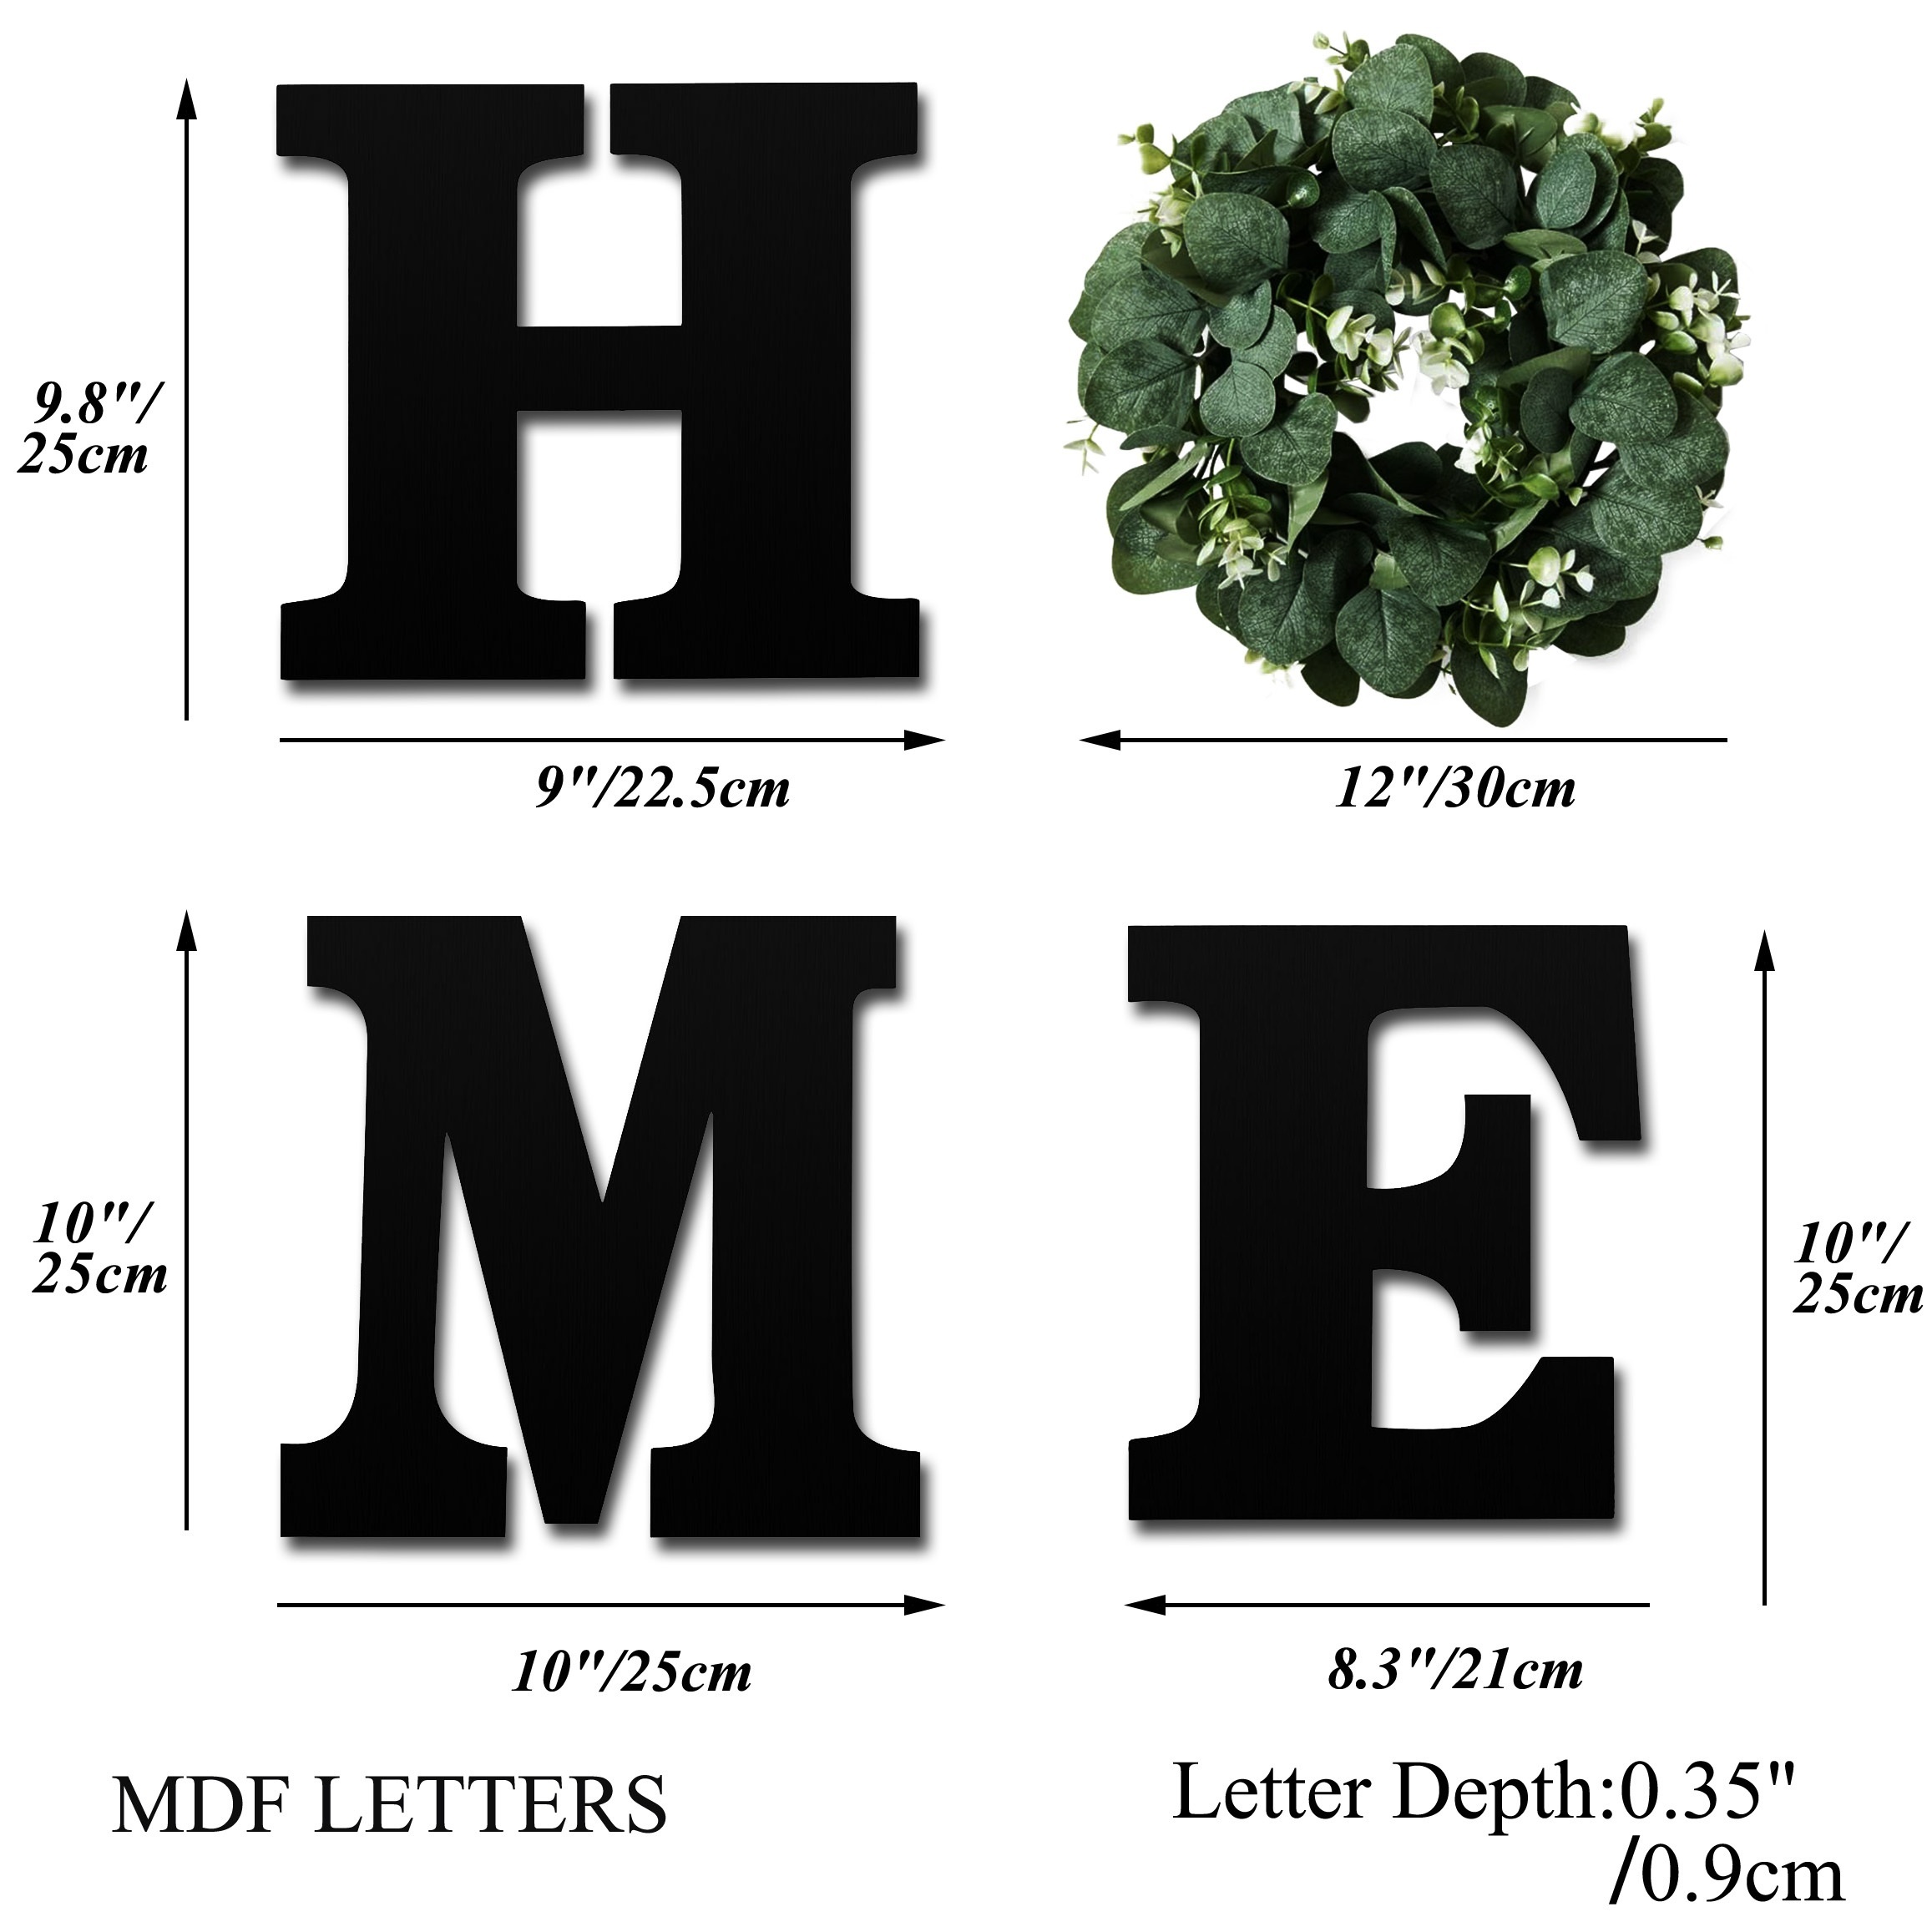 Cartel colgante de madera con letras en inglés «HOME» (Hogar), letras de  madera con corona de eucalipto artificial, decoración del hogar de estilo